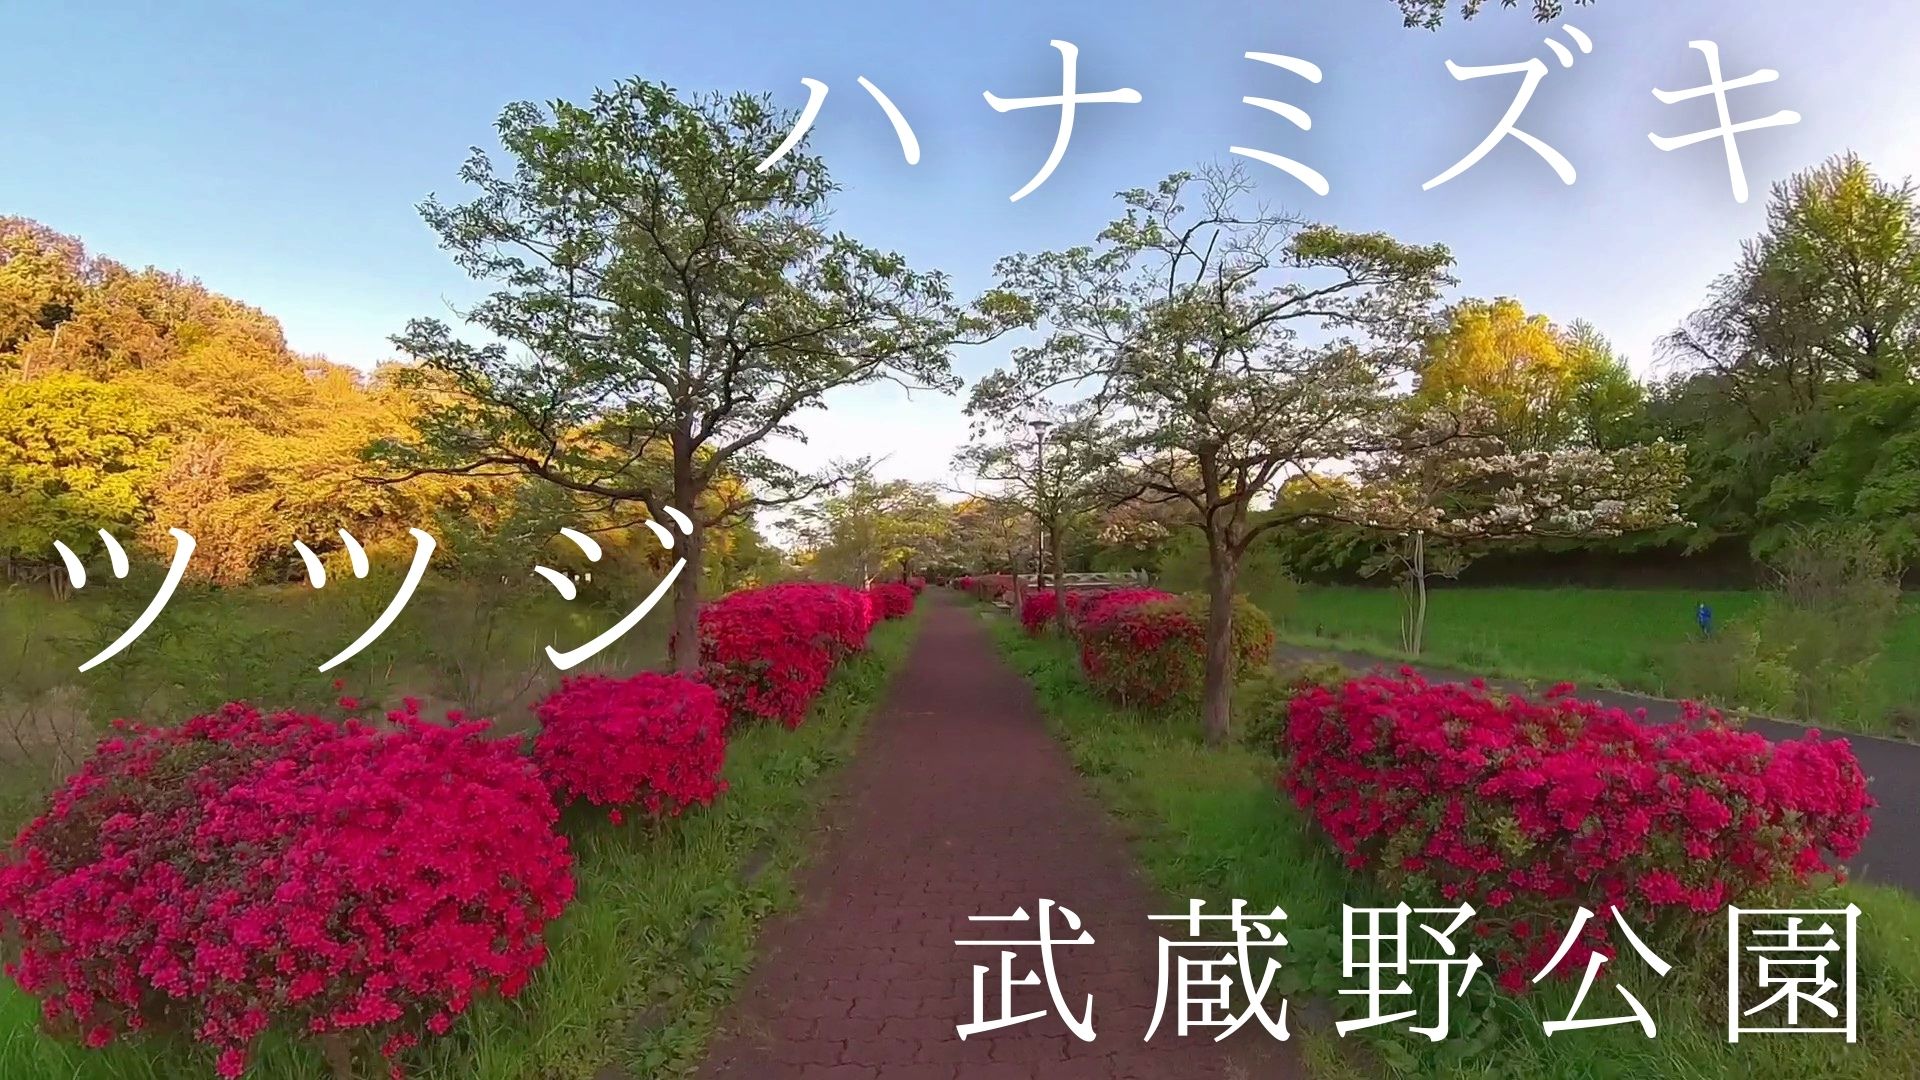 210420-散歩-武蔵野公園・ツツジとハナミズキ並木を歩く-アイキャッチ画像